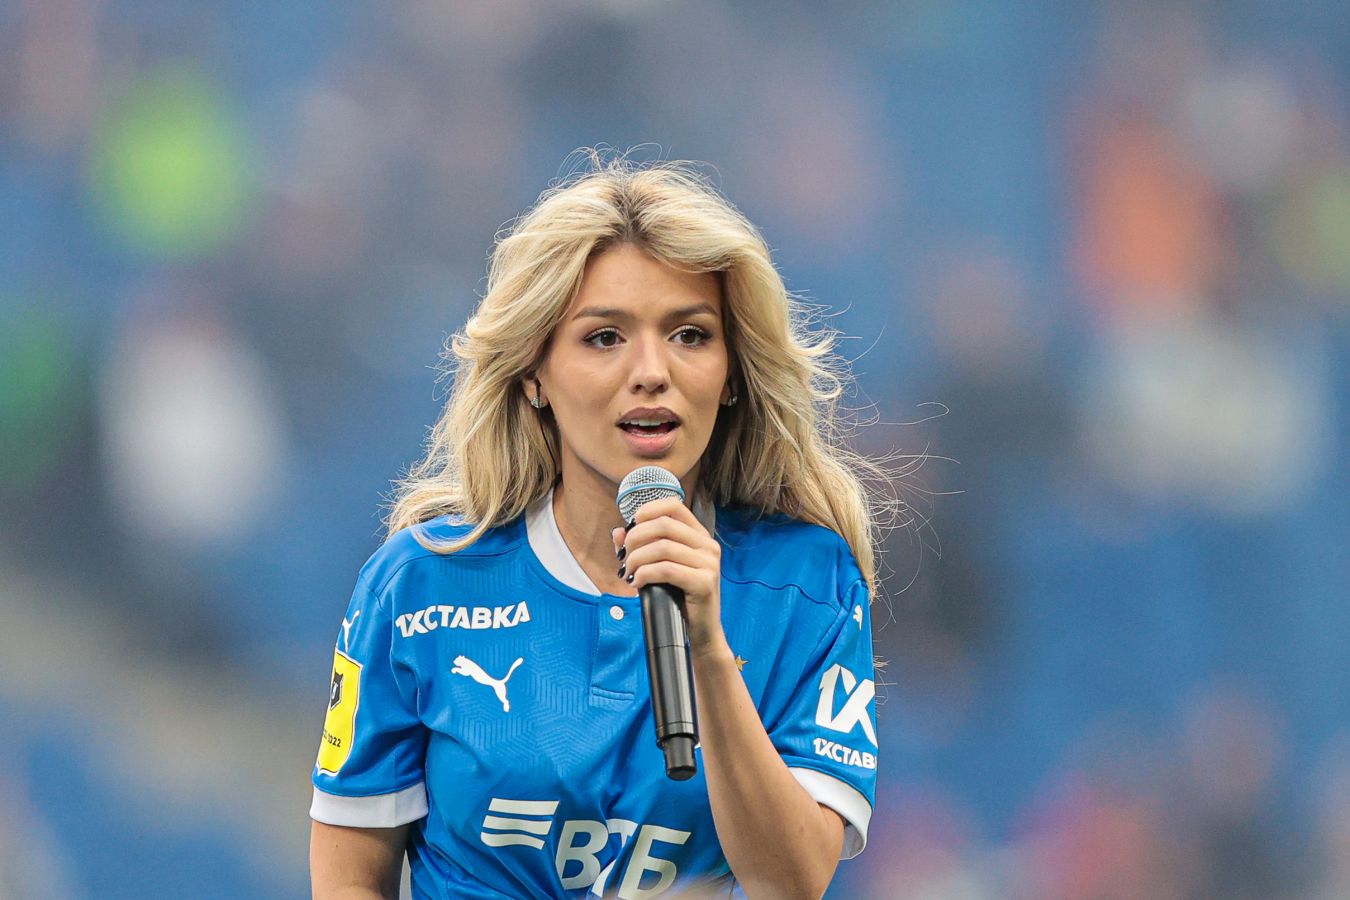 Люся Чеботина заявила, что она и МакSим пели под фонограмму после финала Кубка России